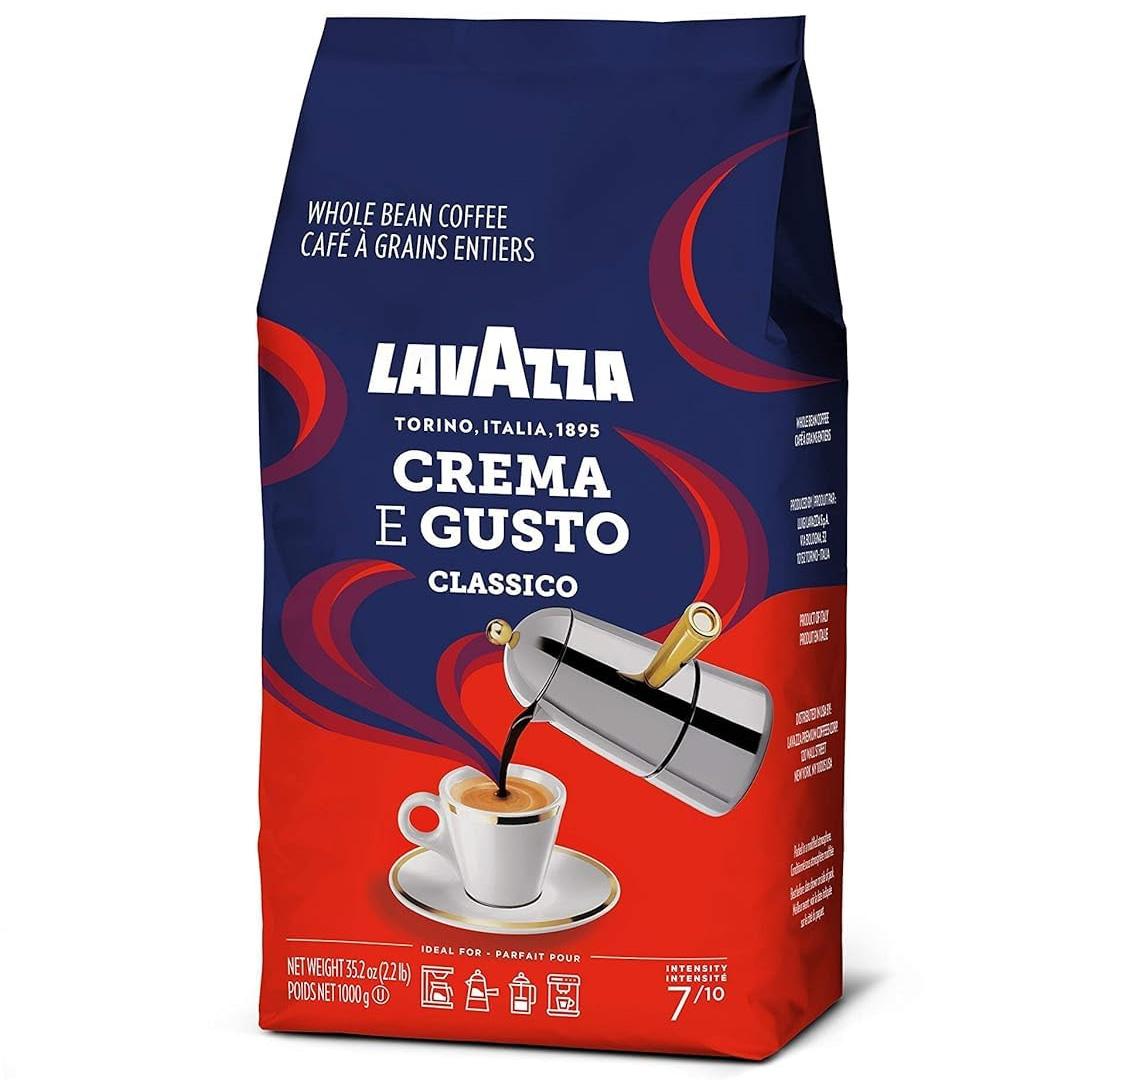 Lavazza Crema E Gusto Whole Bean Coffee 1KG Bag for $14.44